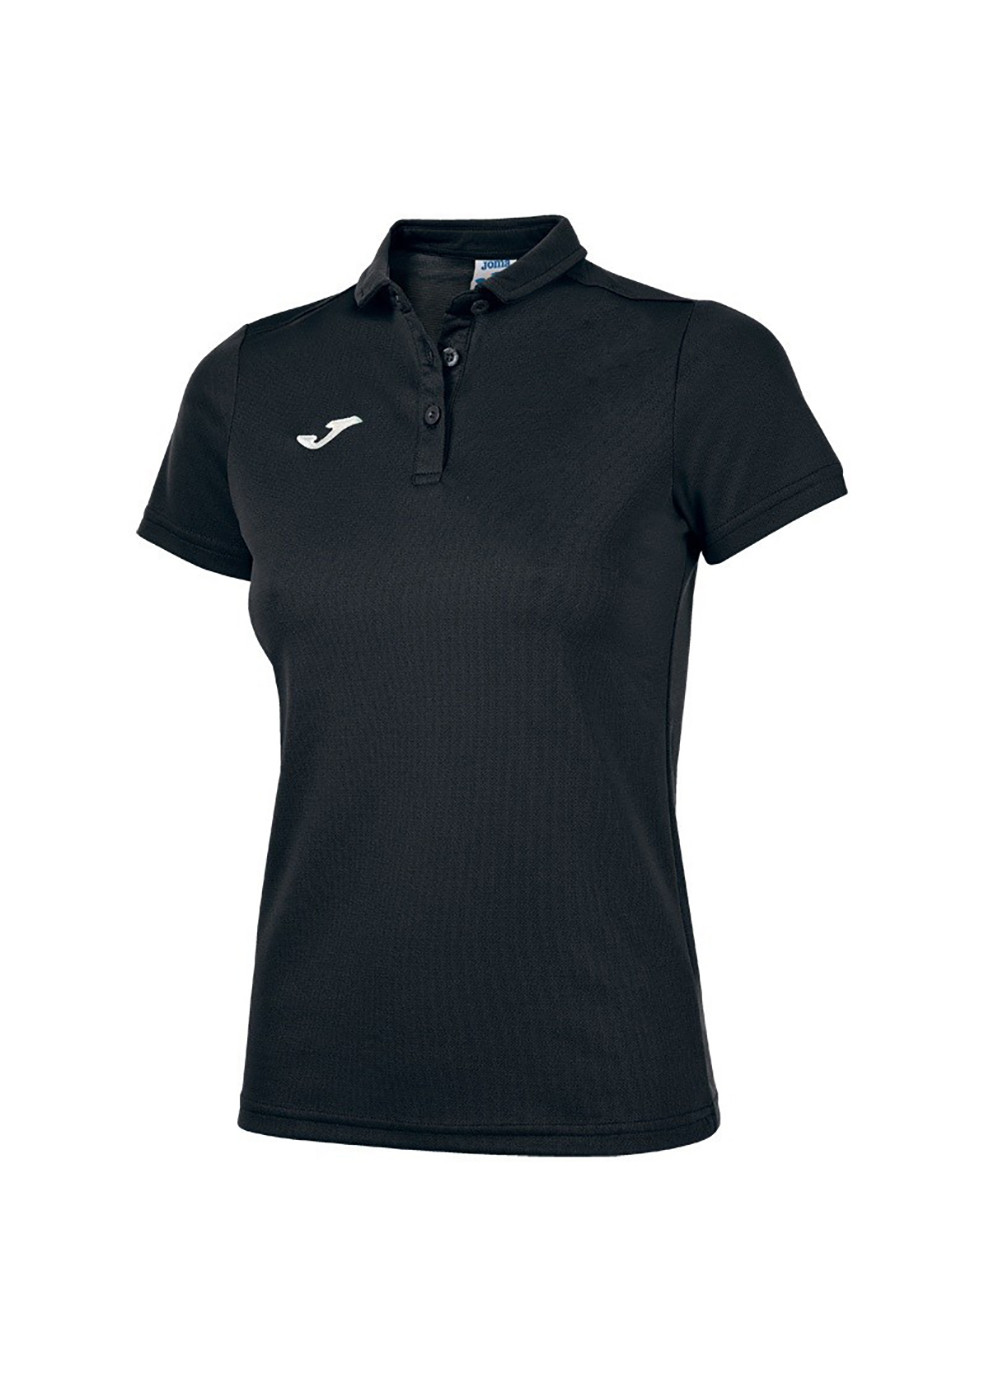 Черная женская футболка-поло hobby women polo hirt black s/s черный Joma с логотипом